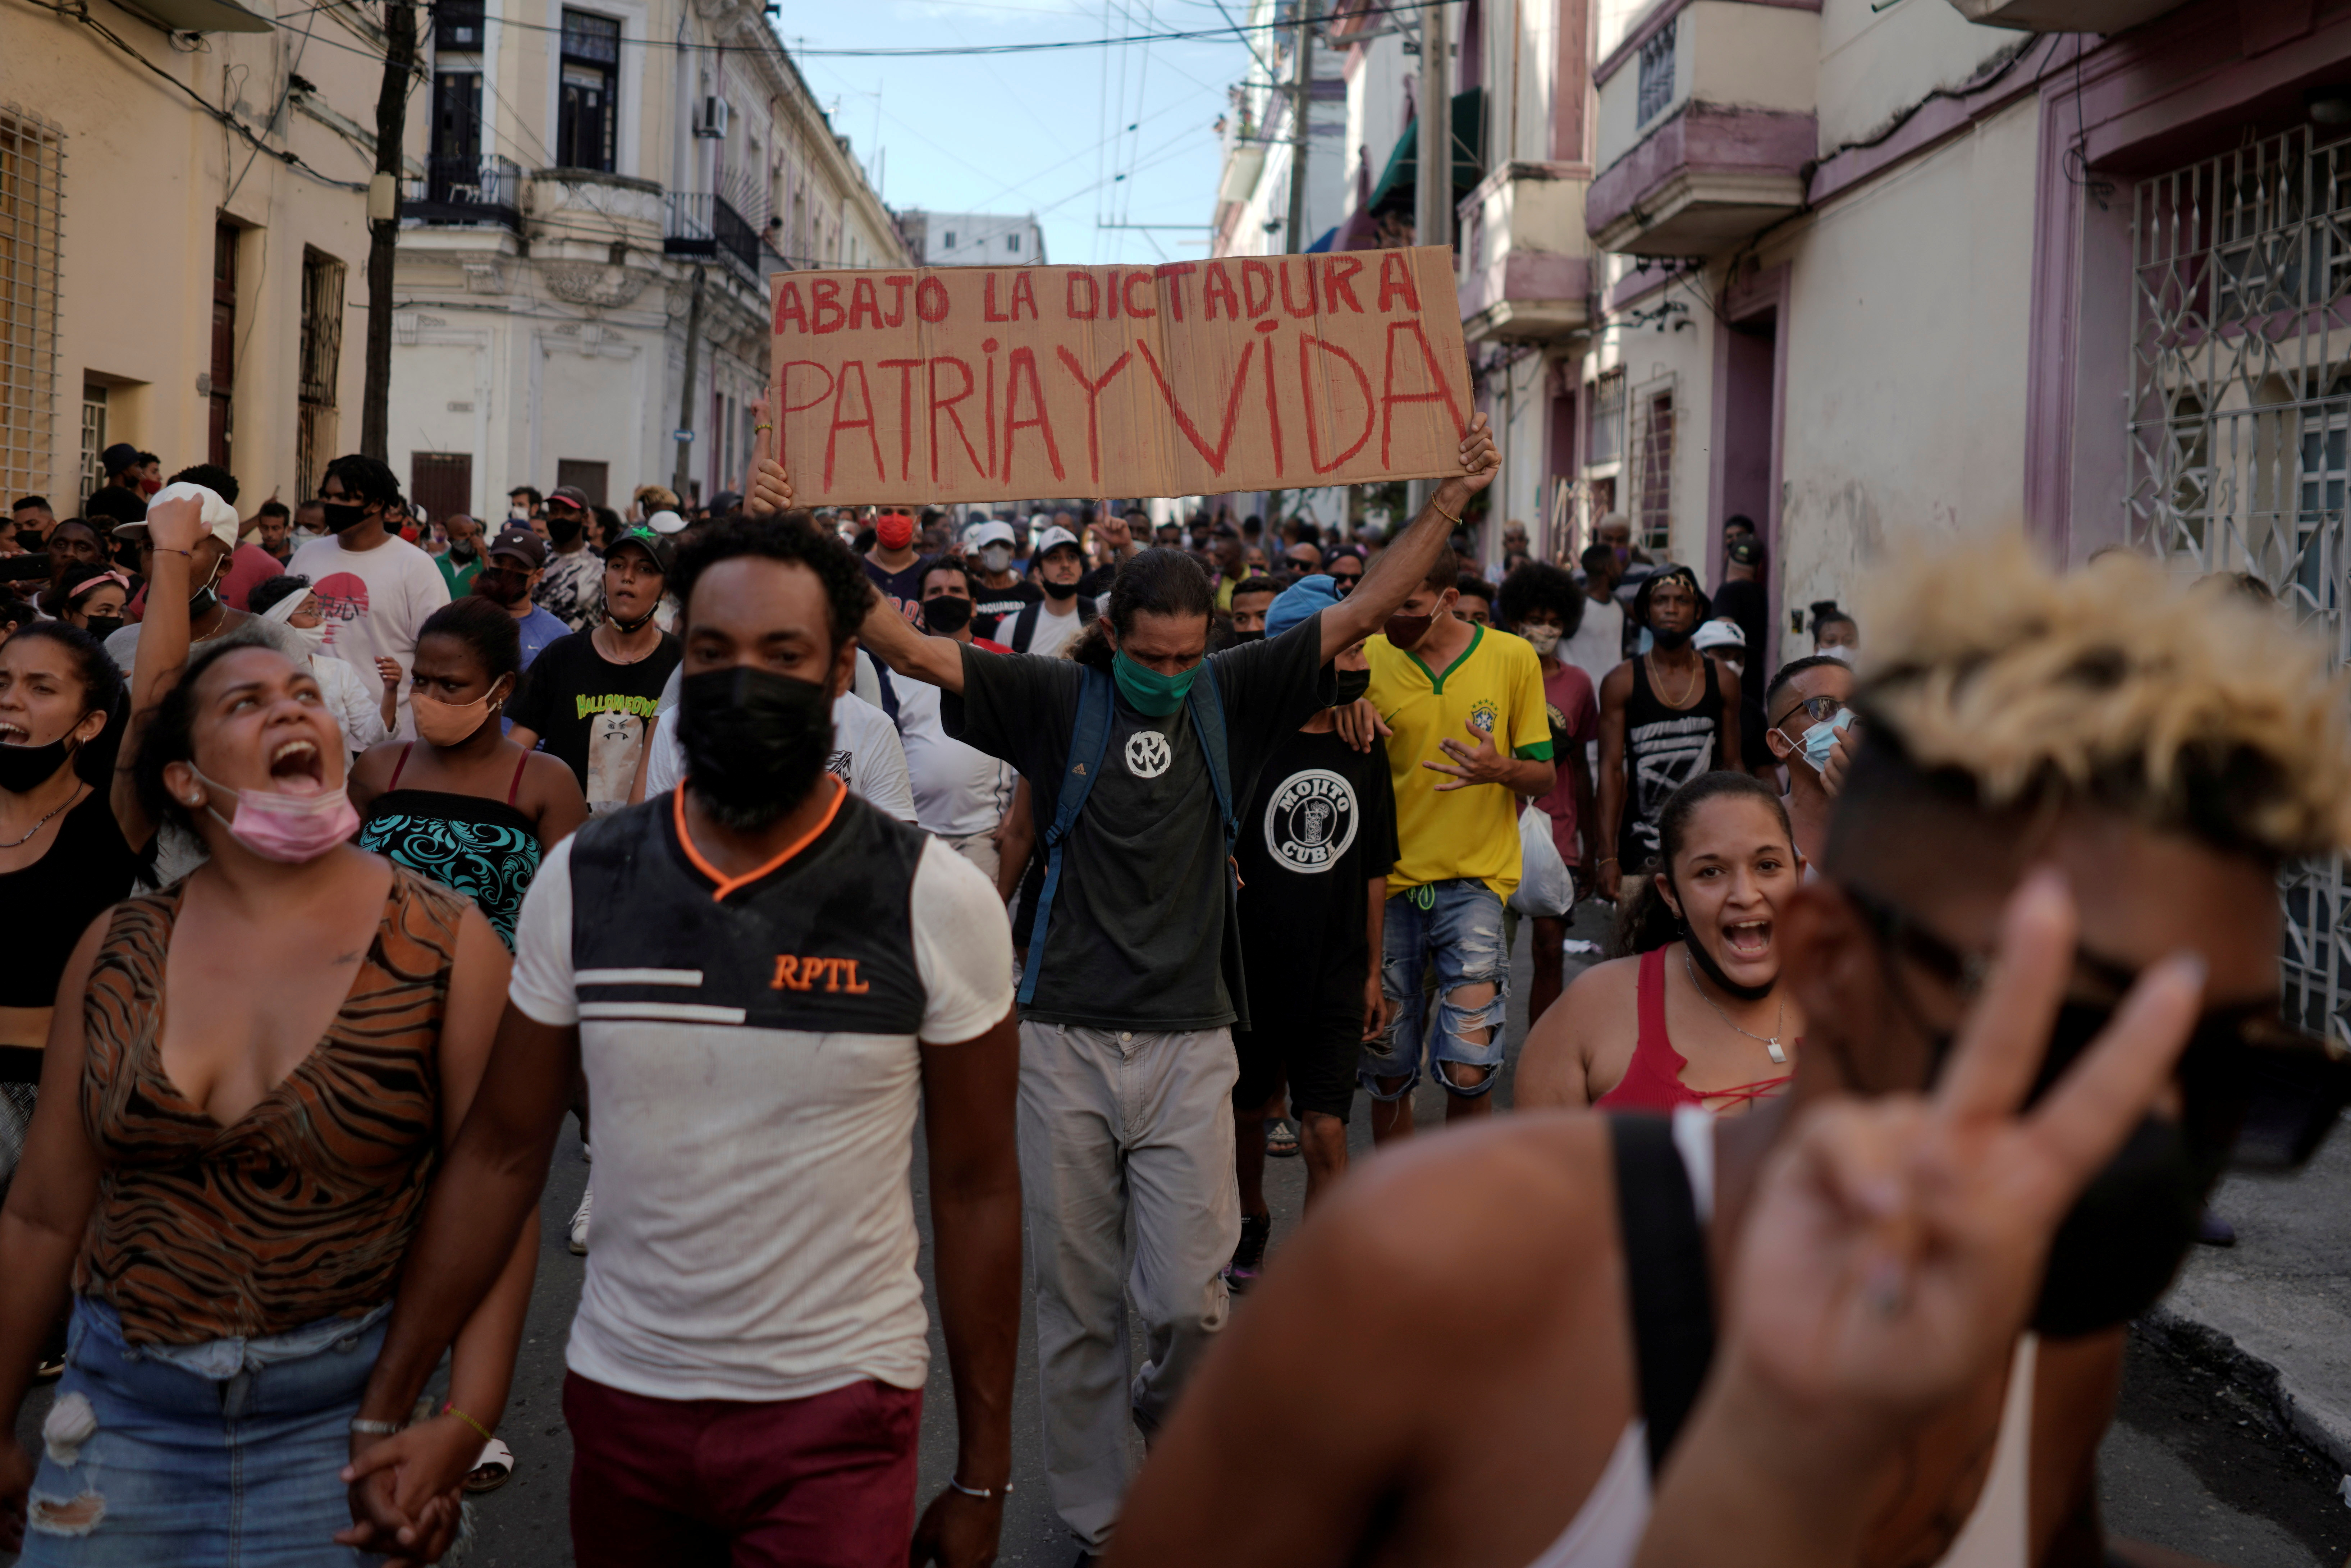 Foto de archivo: Personas gritan consignas contra el régimen durante una protesta en La Habana el 11 de julio de 2021 (REUTERS/Alexandre Meneghini)